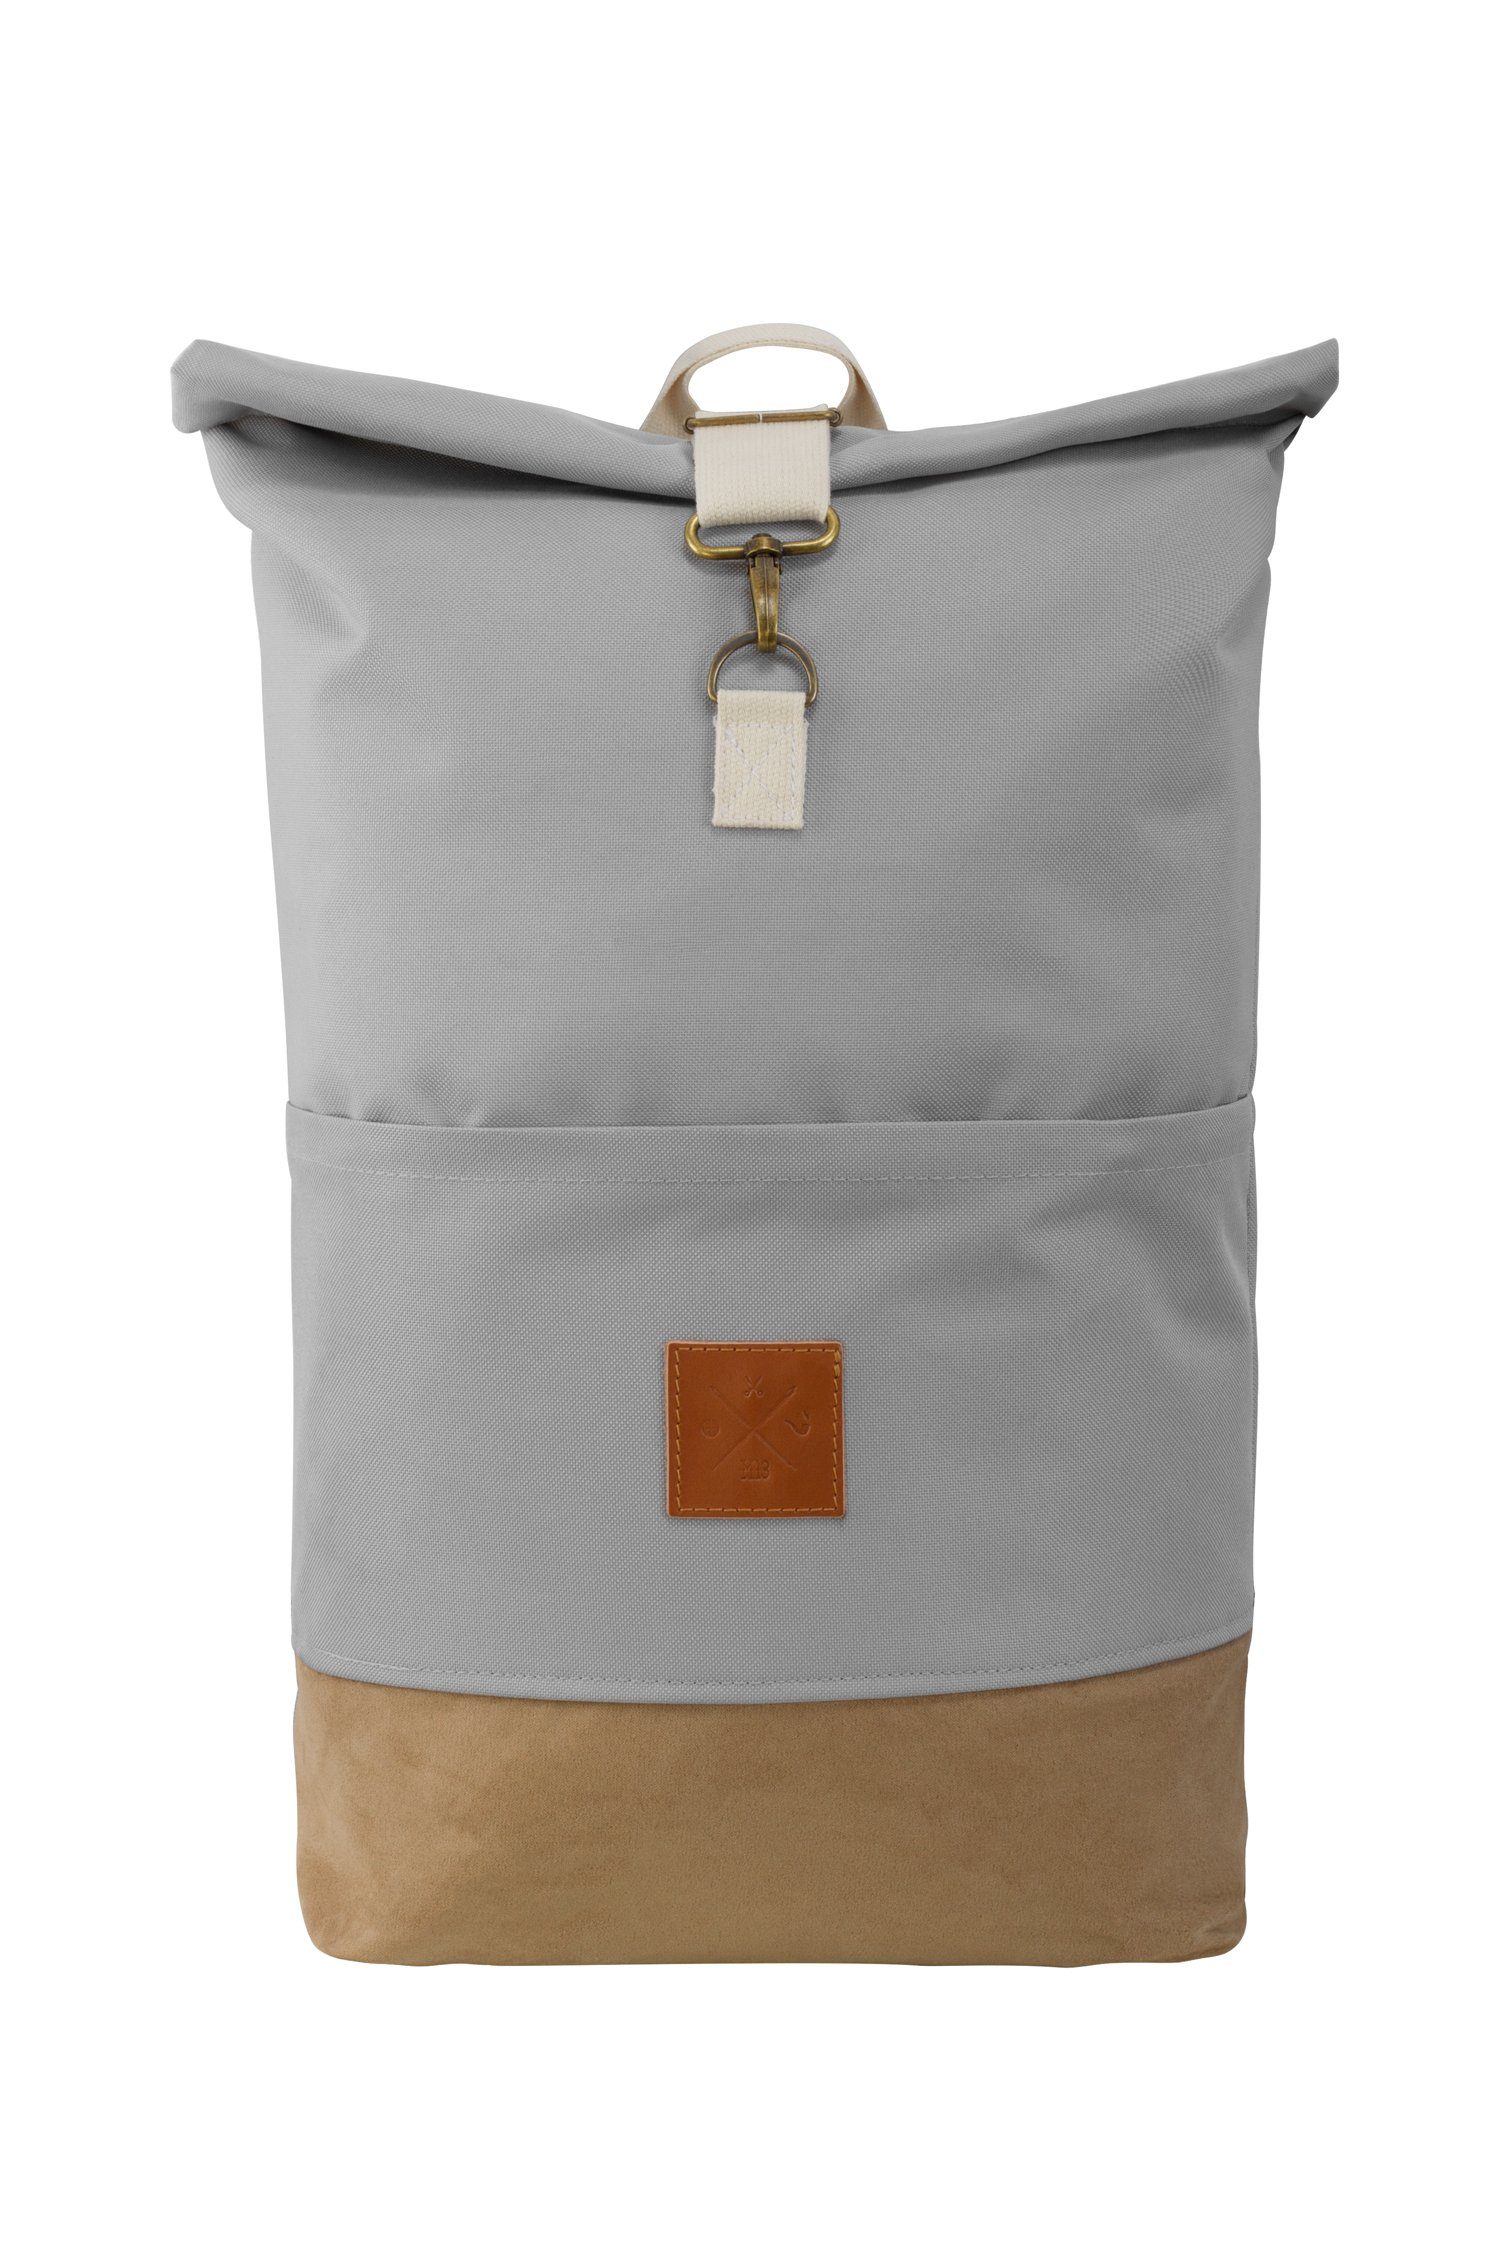 Manufaktur13 Tagesrucksack Roll-Top Backpack - Rucksack mit Rollverschluss, wasserdicht/wasserabweisend, verstellbare Gurte Canvas Wood II